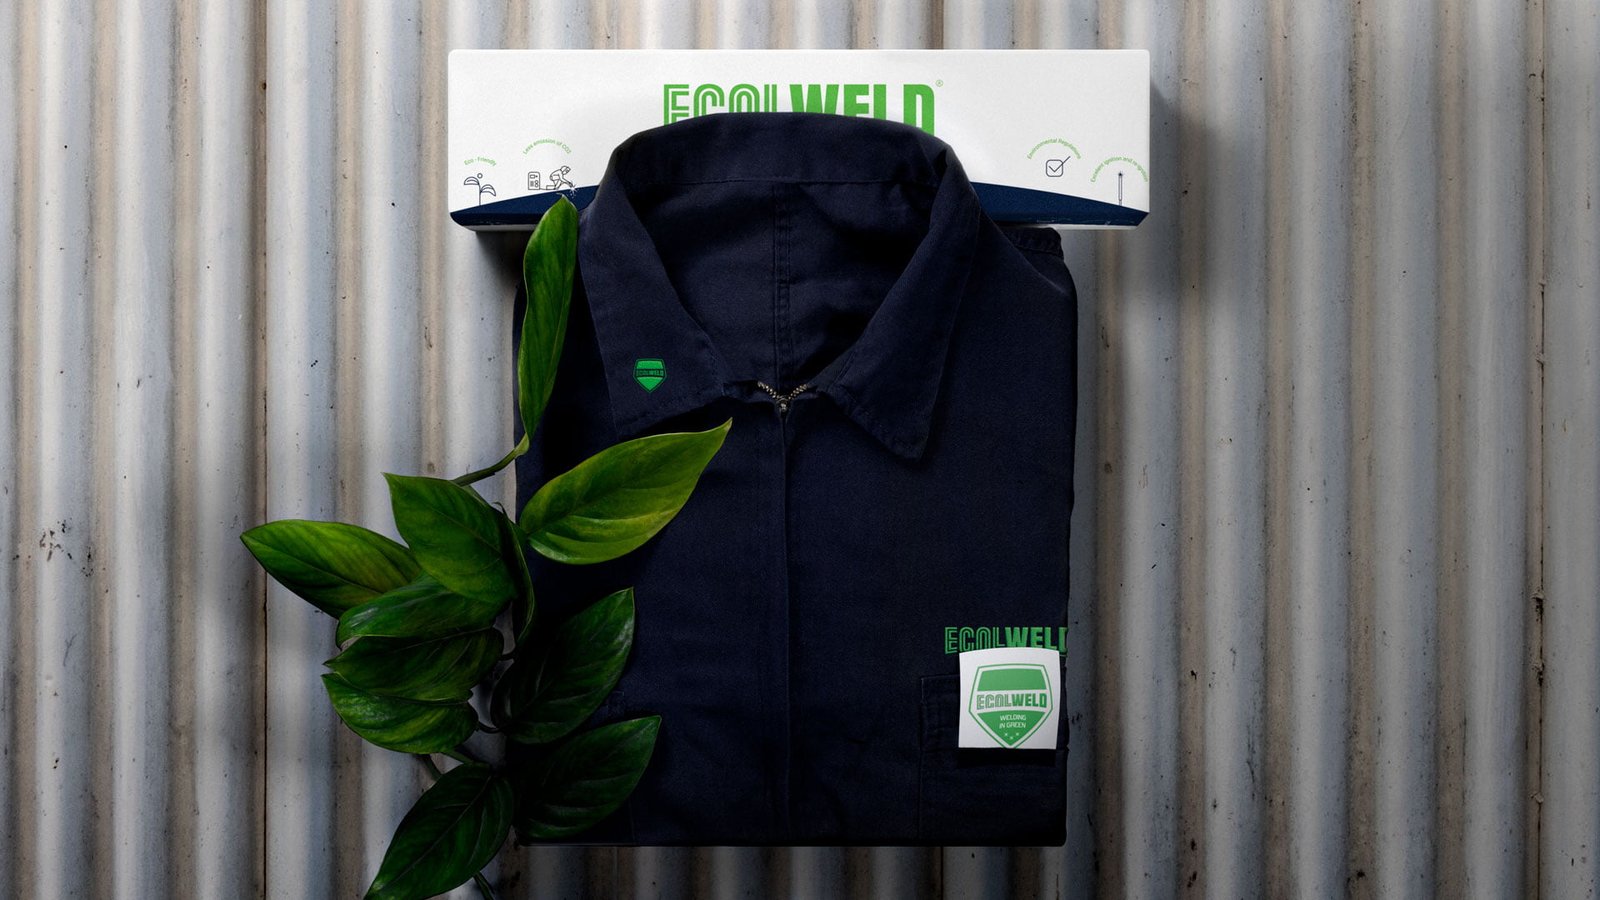 Uniforme y empaque de producto marca Ecolweld